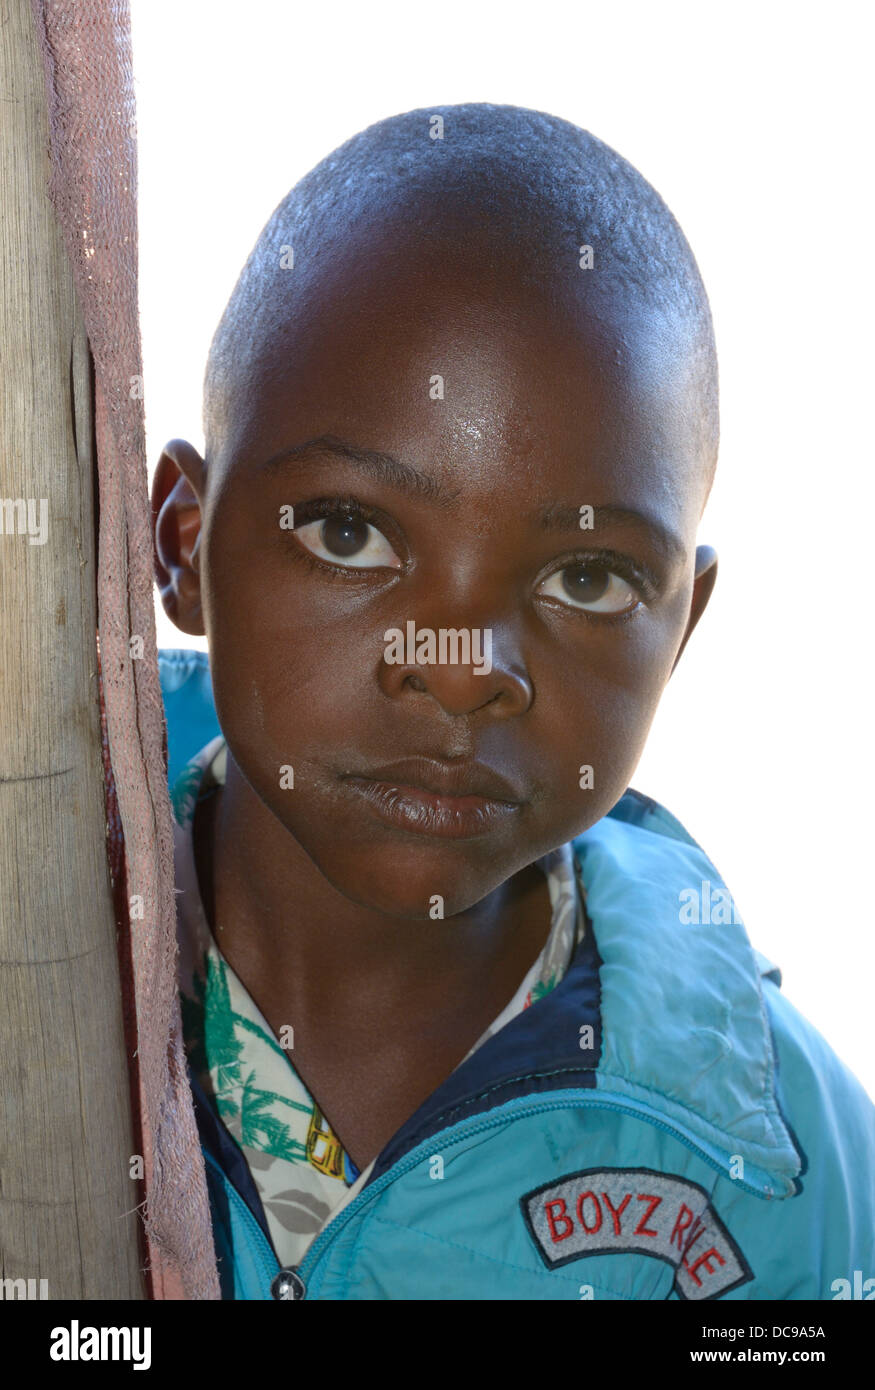 Niño Africano, nueve años aprox. Foto de stock